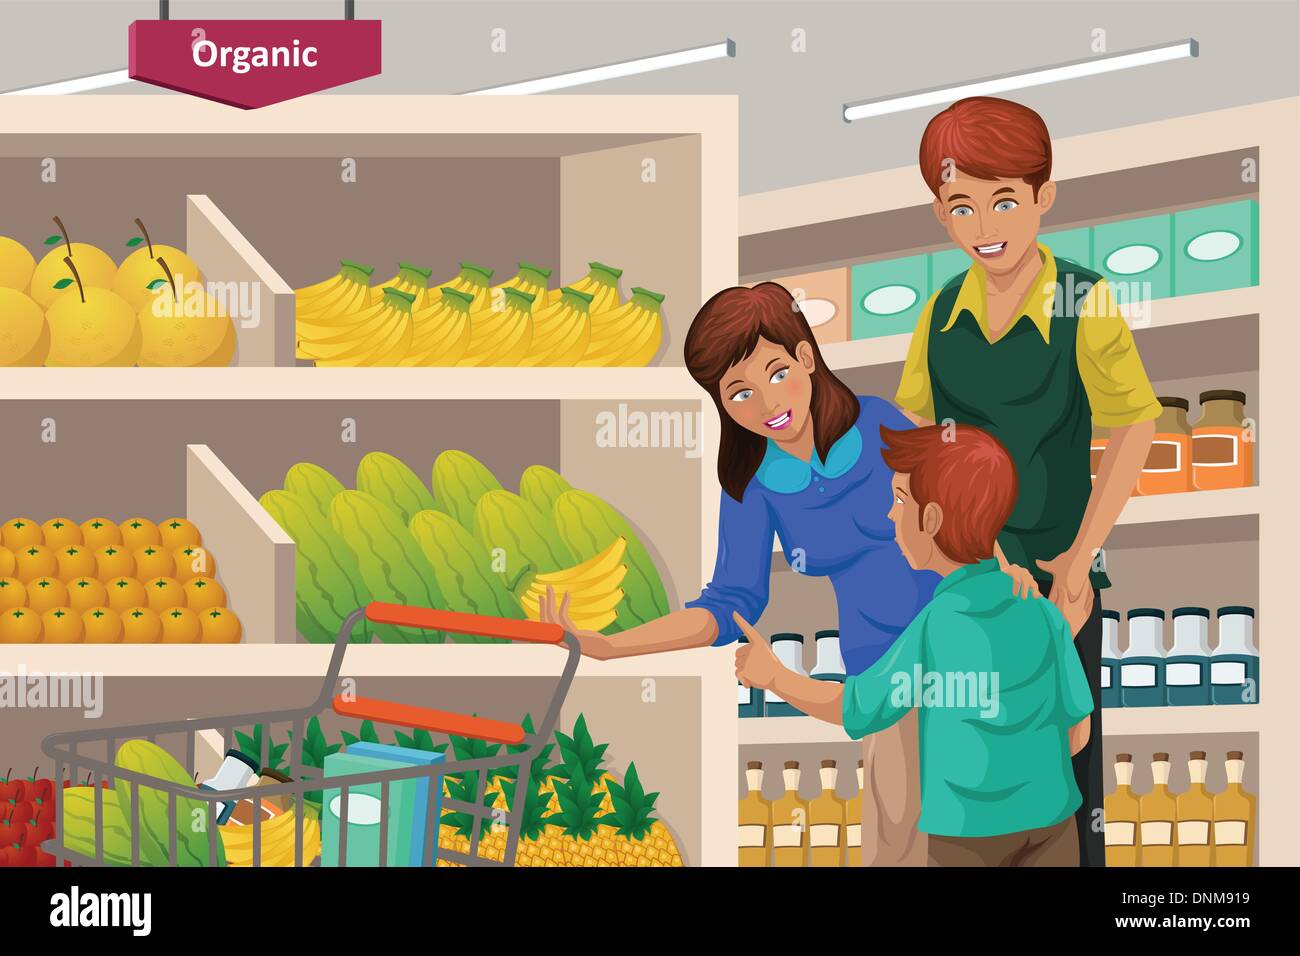 Un vecteur illustration d'une famille heureuse dans un supermarché fruits shopping Illustration de Vecteur